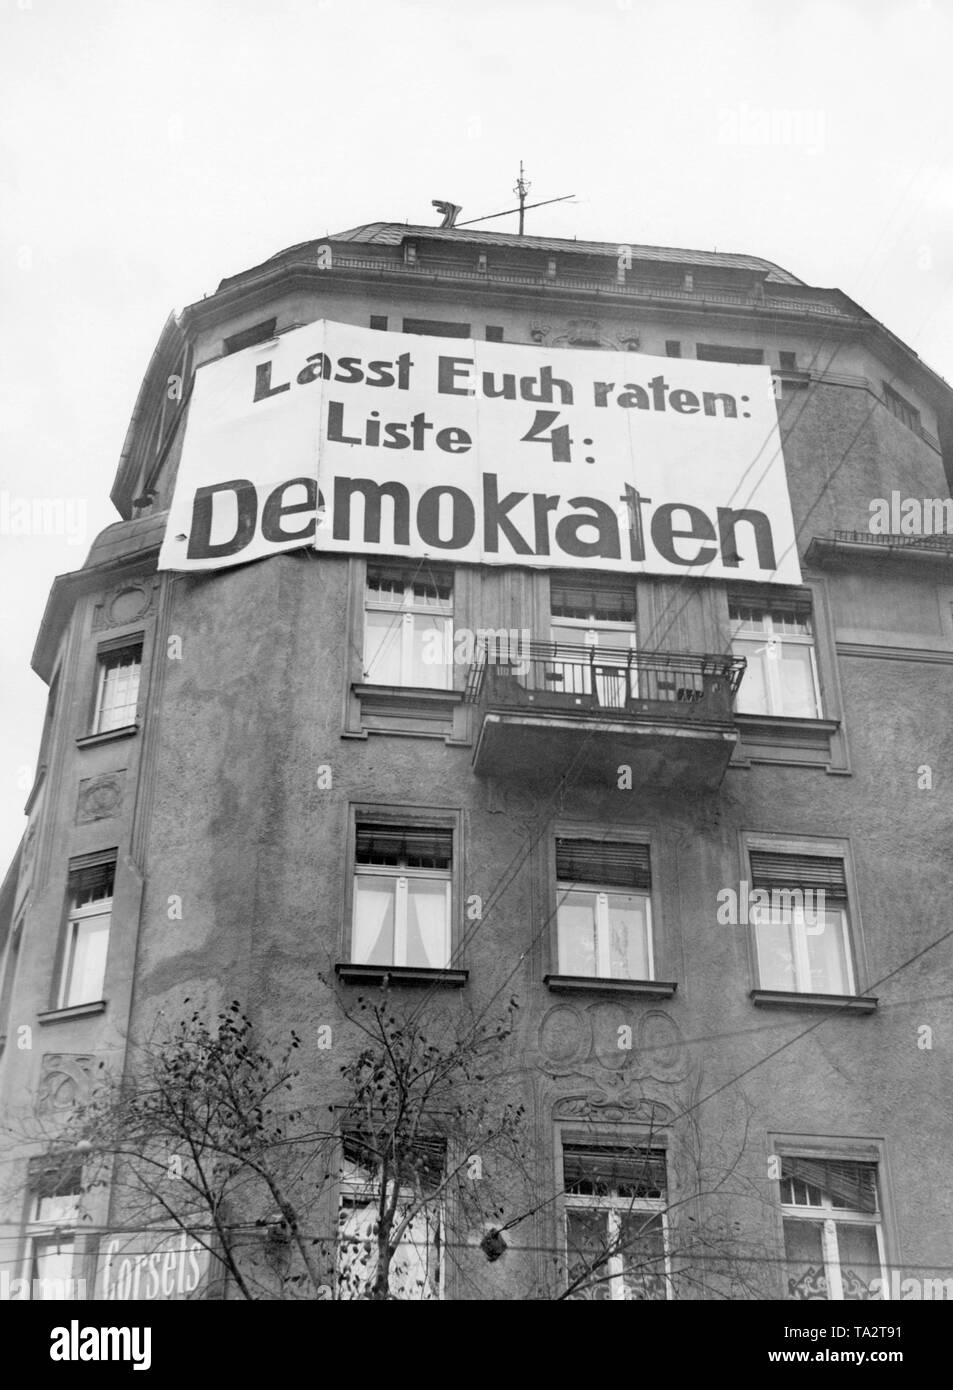 Wahlplakat der Deutschen Demokratischen Partei mit der Inschrift "Lassen Sie uns raten: Liste 4: Demokraten'. Stockfoto